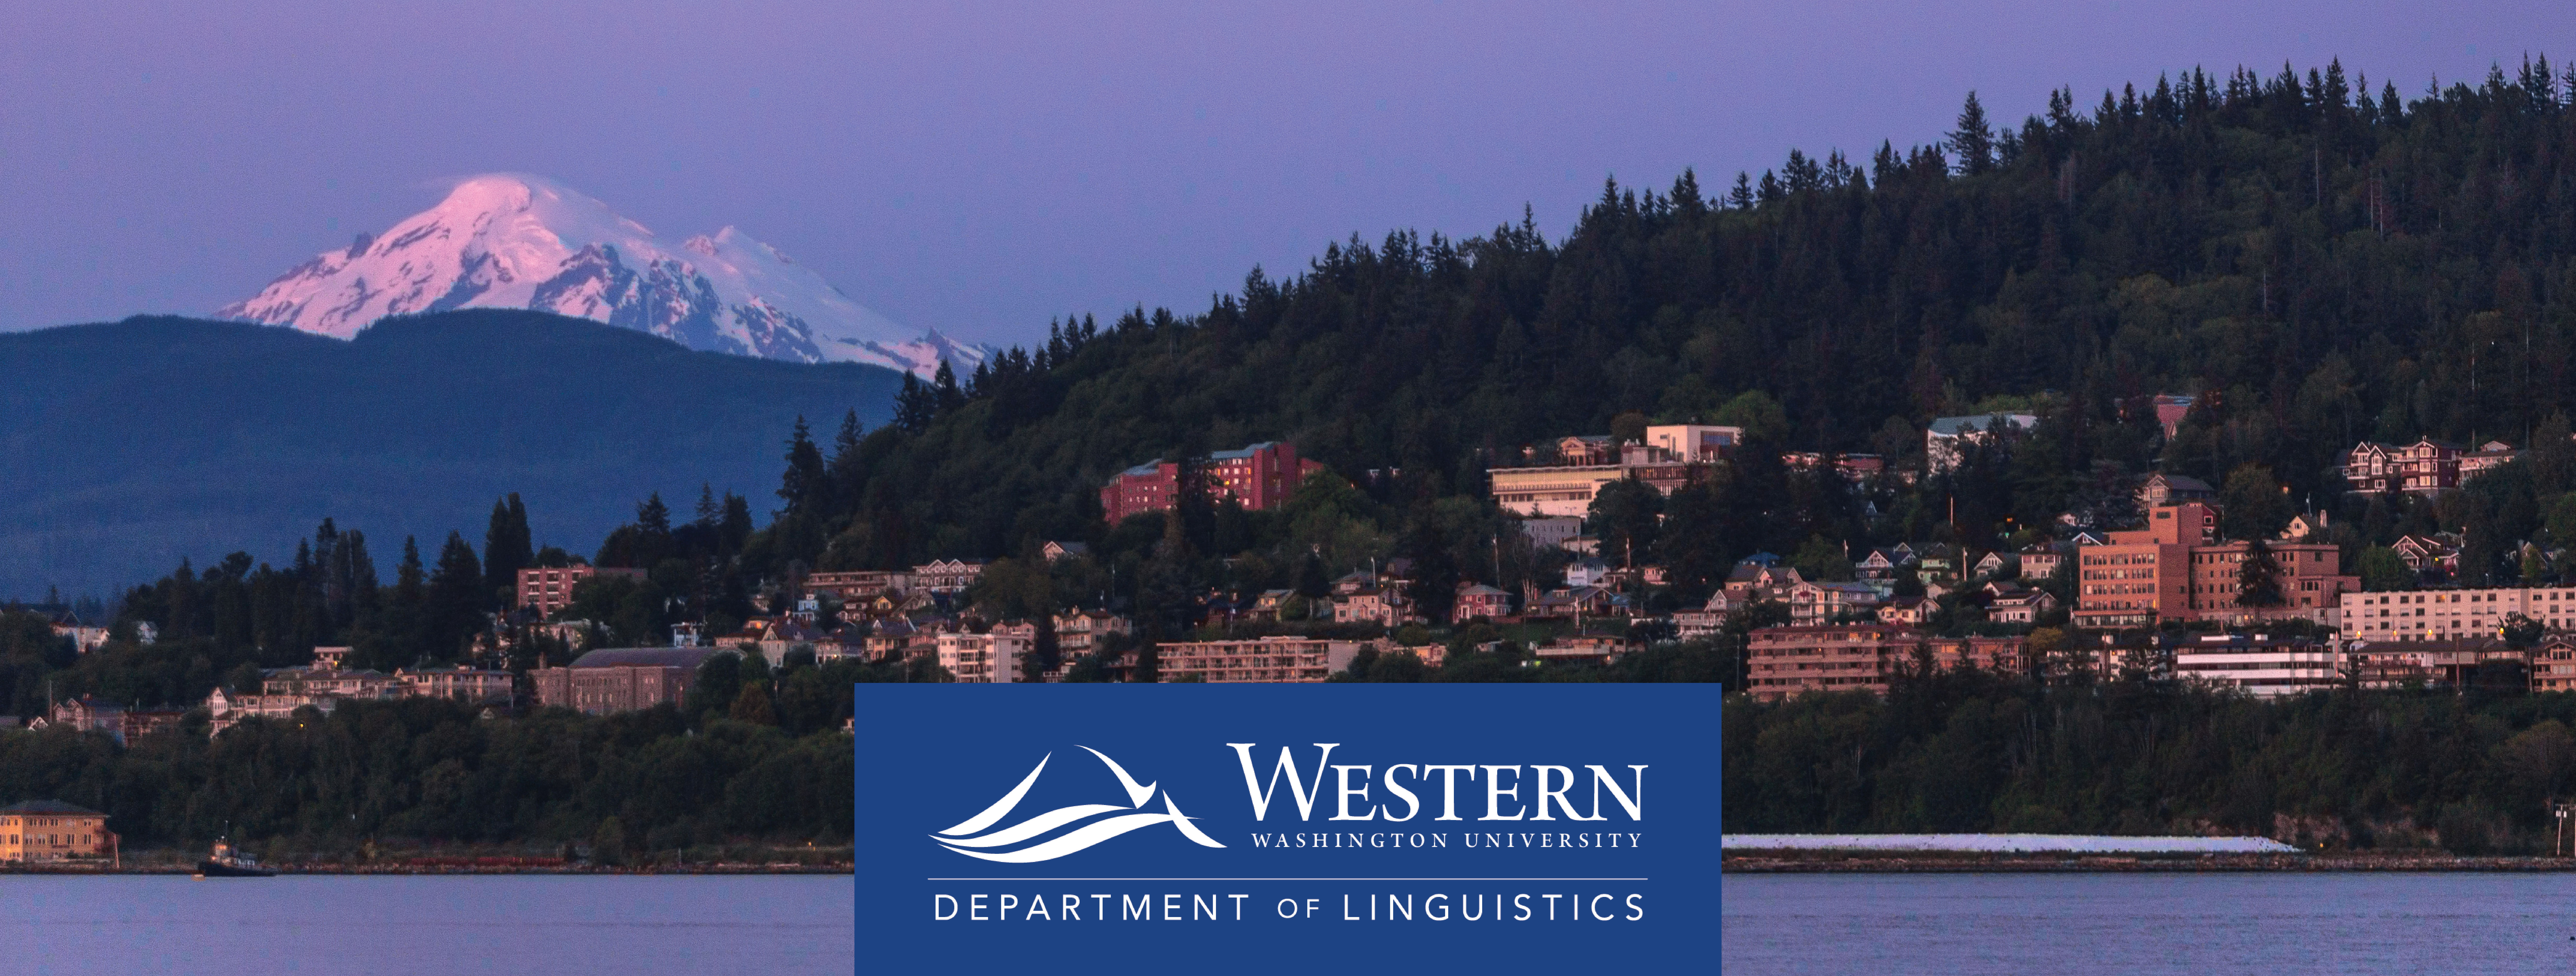 Bellingham Bay, Mount Baker, and Western Washington University. Contains Western Washington University, Department of Linguistics logo.